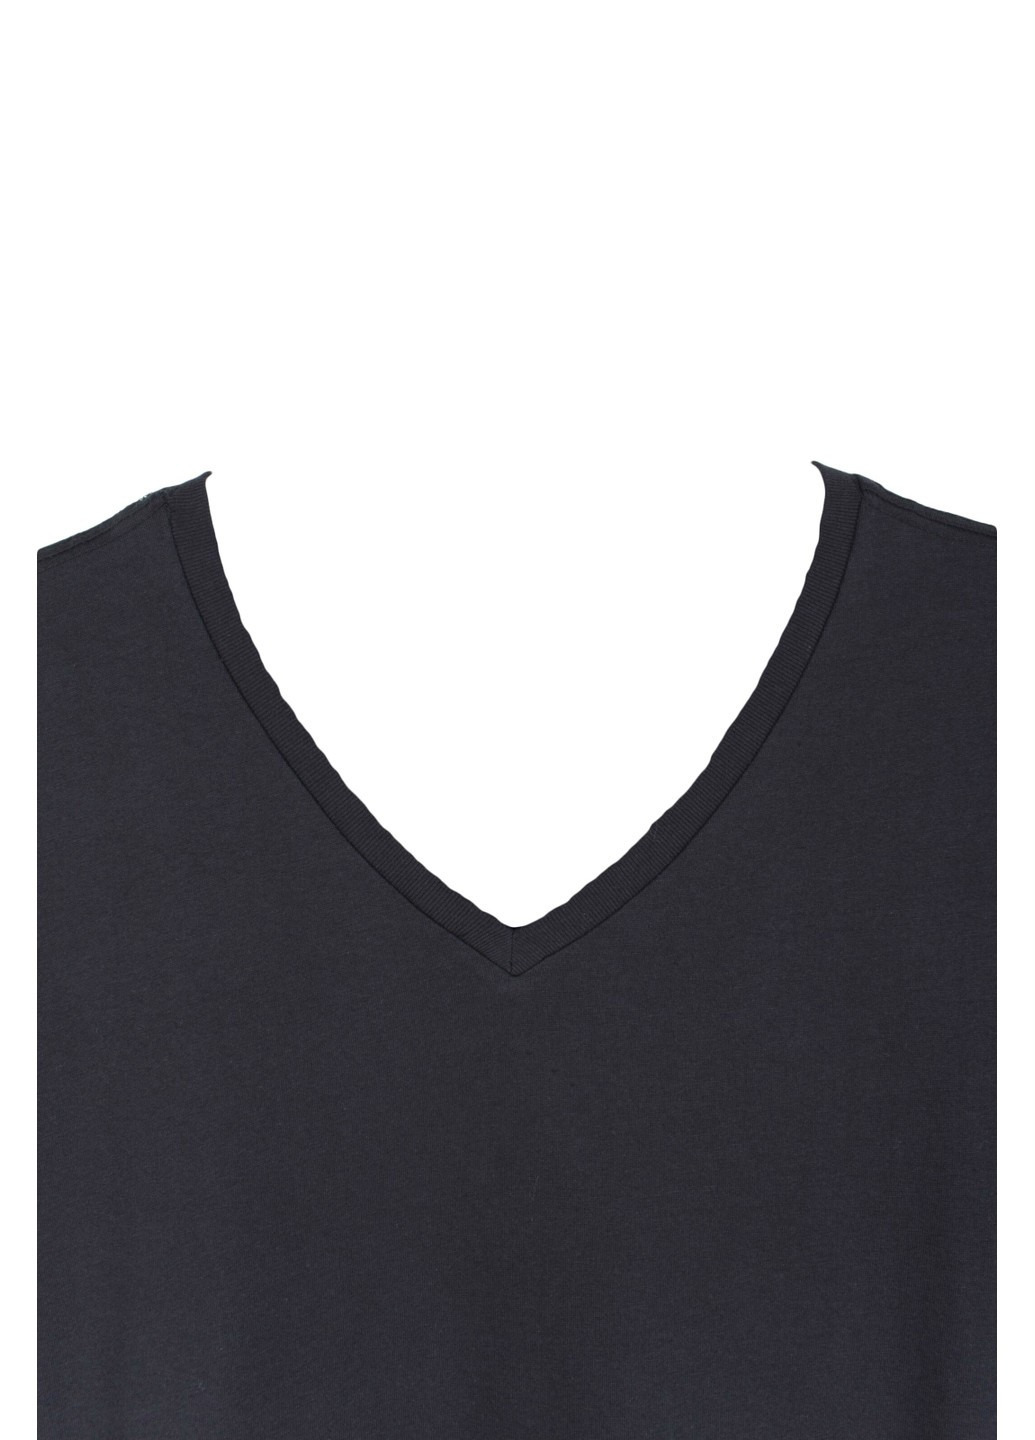 Черная футболка levis черная базовая v s63588 Levi's